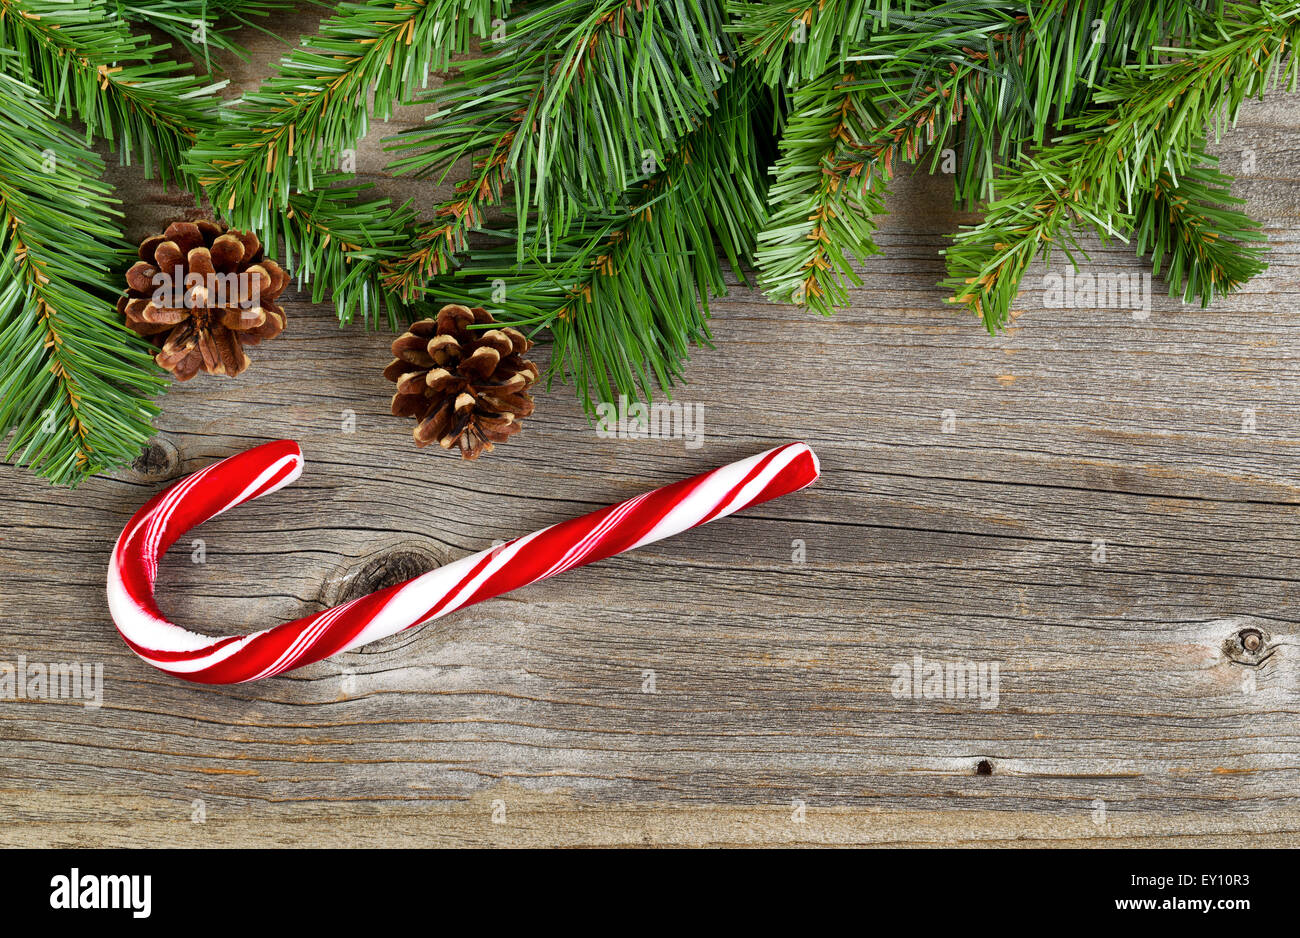 Frontière de Noël avec des branches d'arbre de pin, cônes et une seule grande canne rustique sur les planches de bois. Banque D'Images